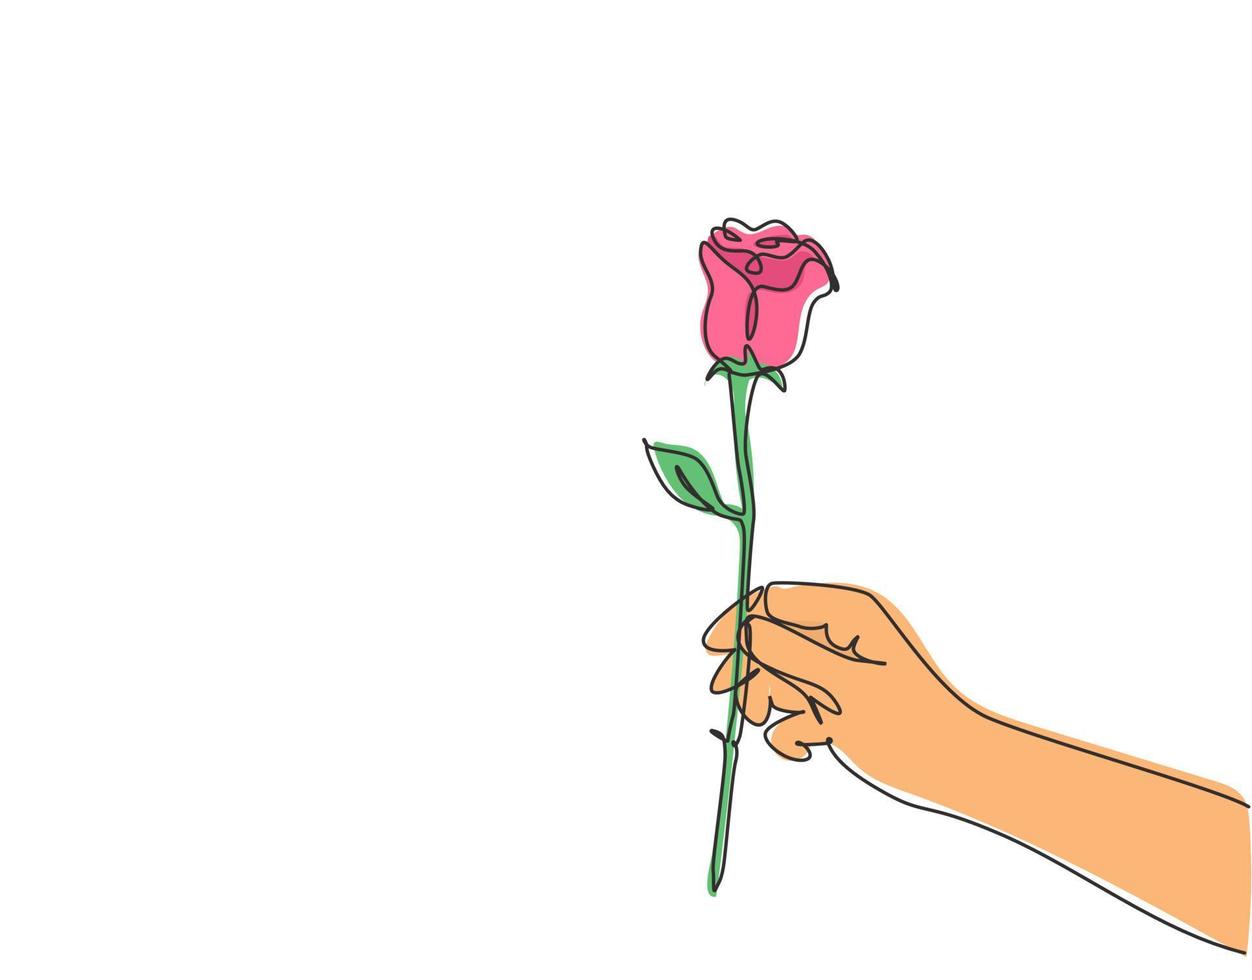 een doorlopende lijntekening van de hand met mooie romantische verse roze bloem. moderne wenskaart, uitnodiging, logo, spandoek, poster concept enkele regel grafisch tekenen ontwerp vectorillustratie vector